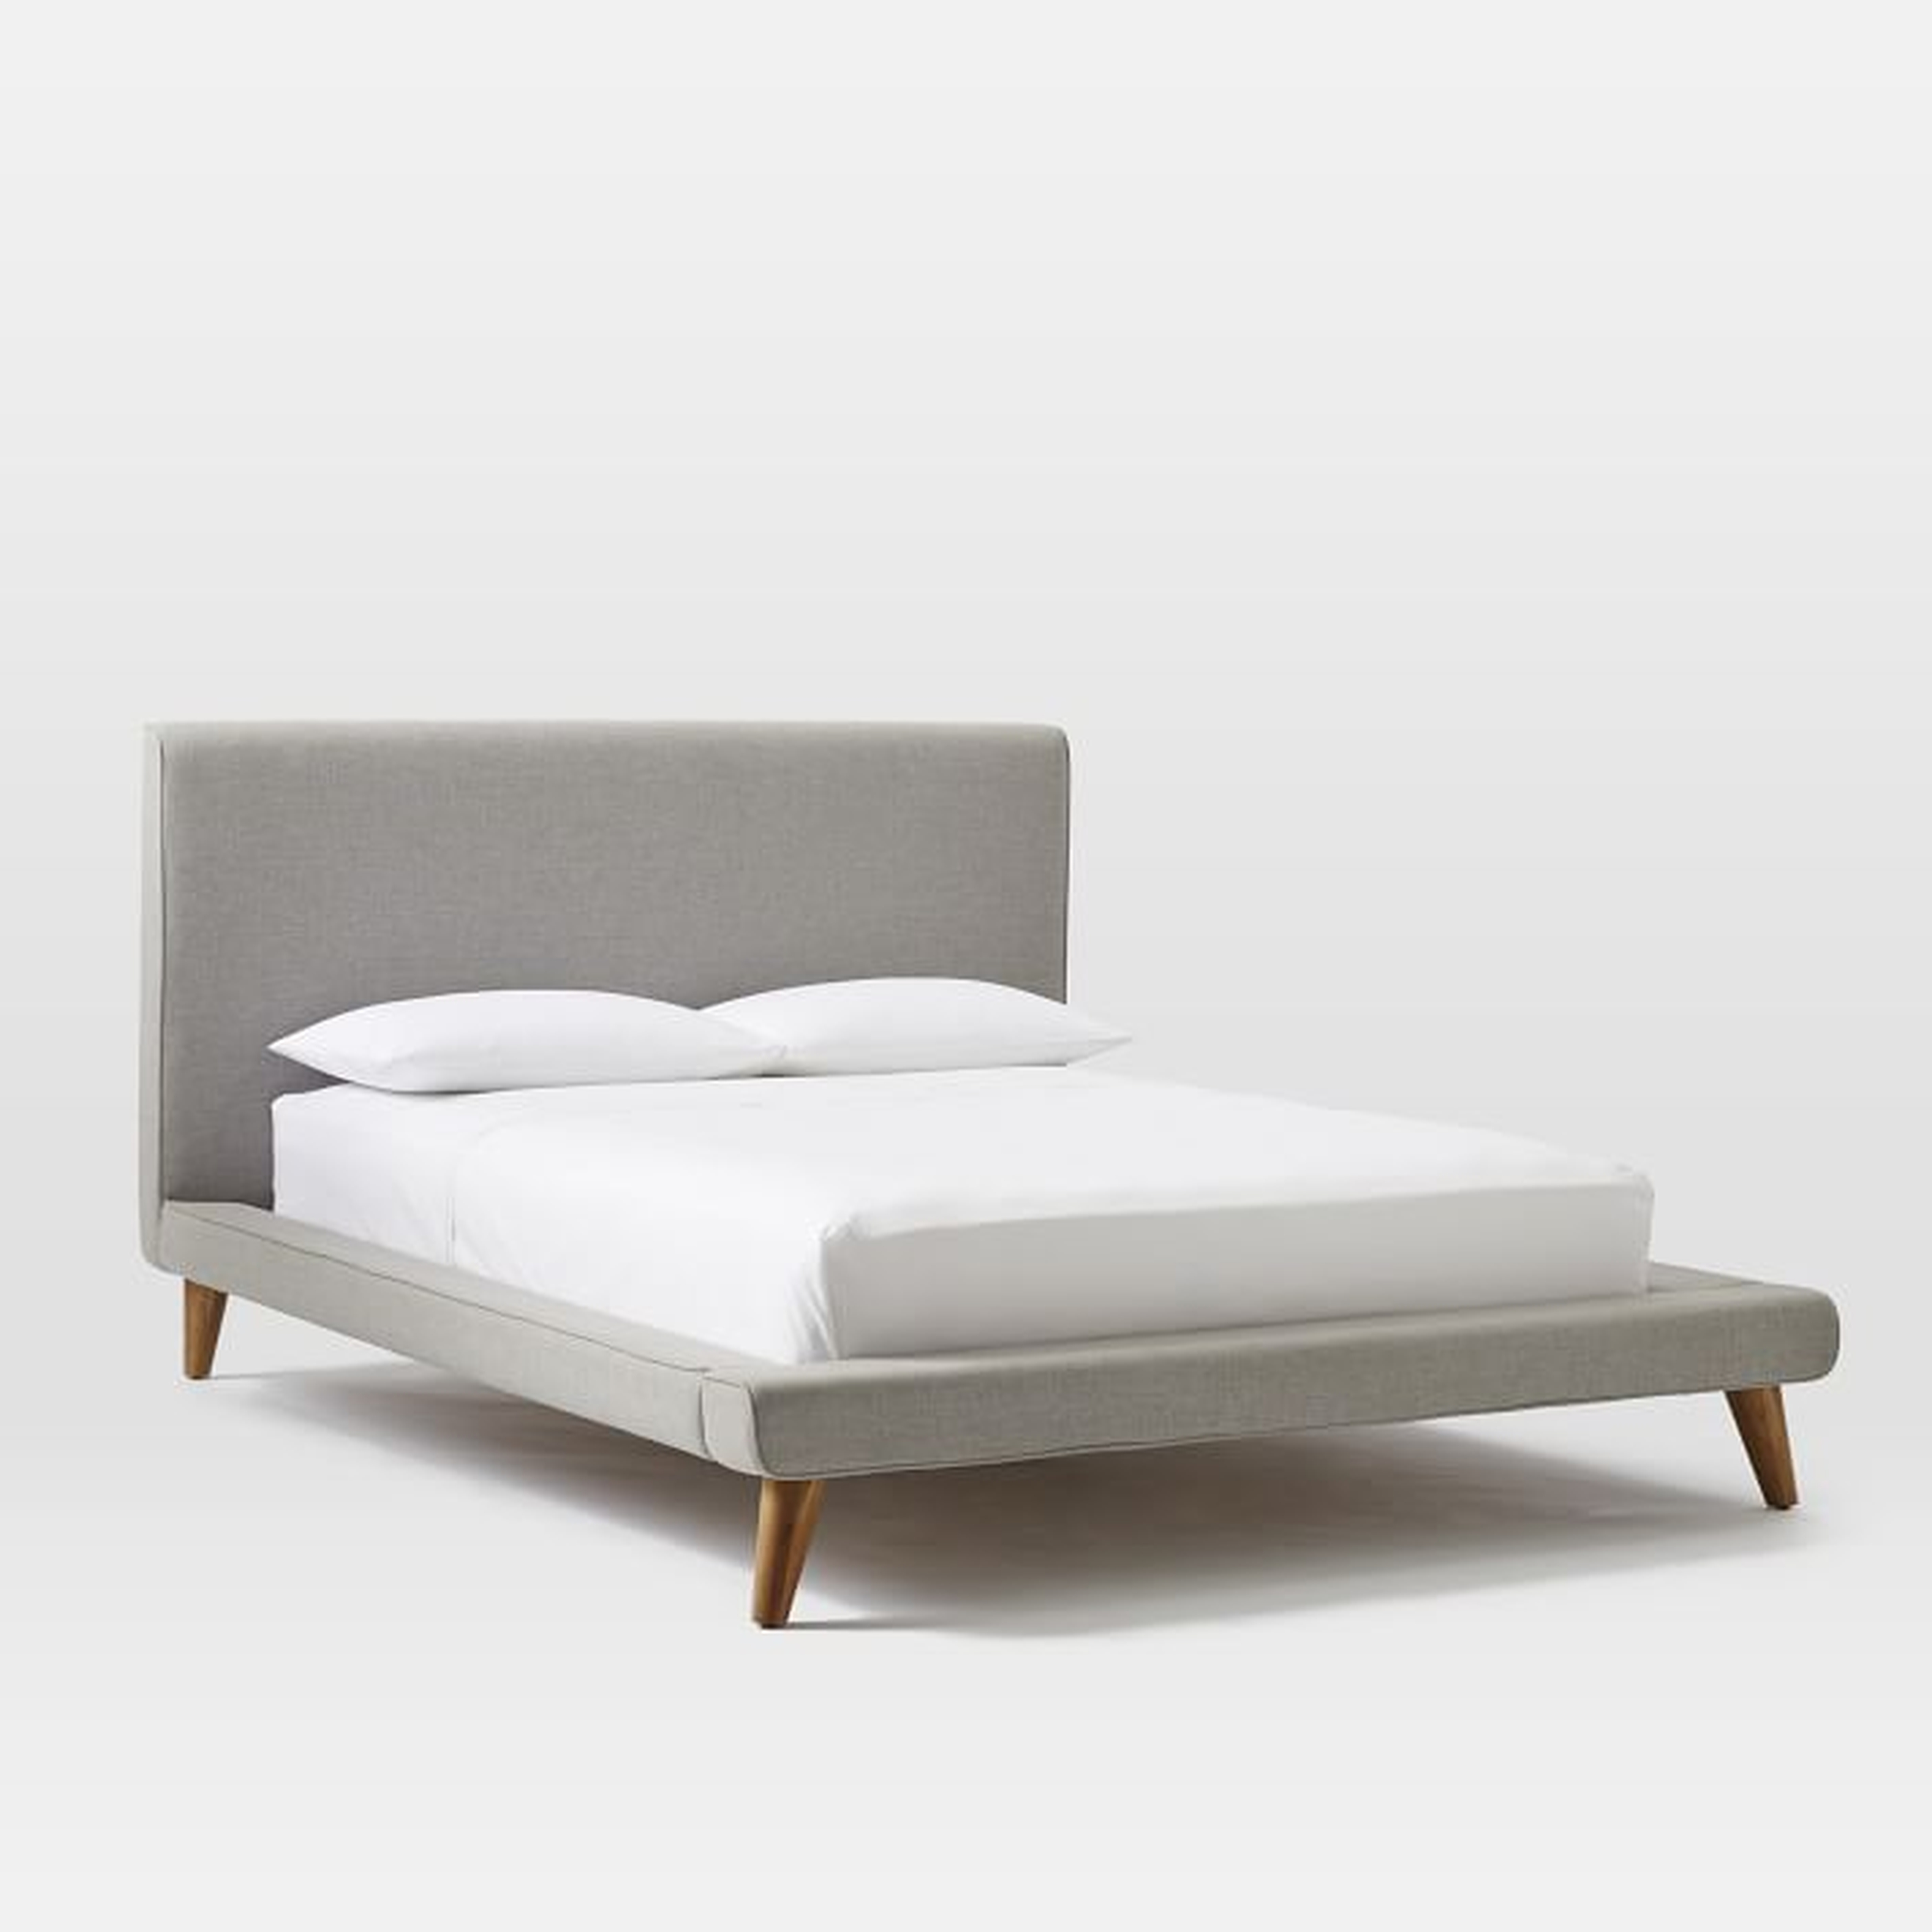 Mod Upholstered Bed Set - King - West Elm